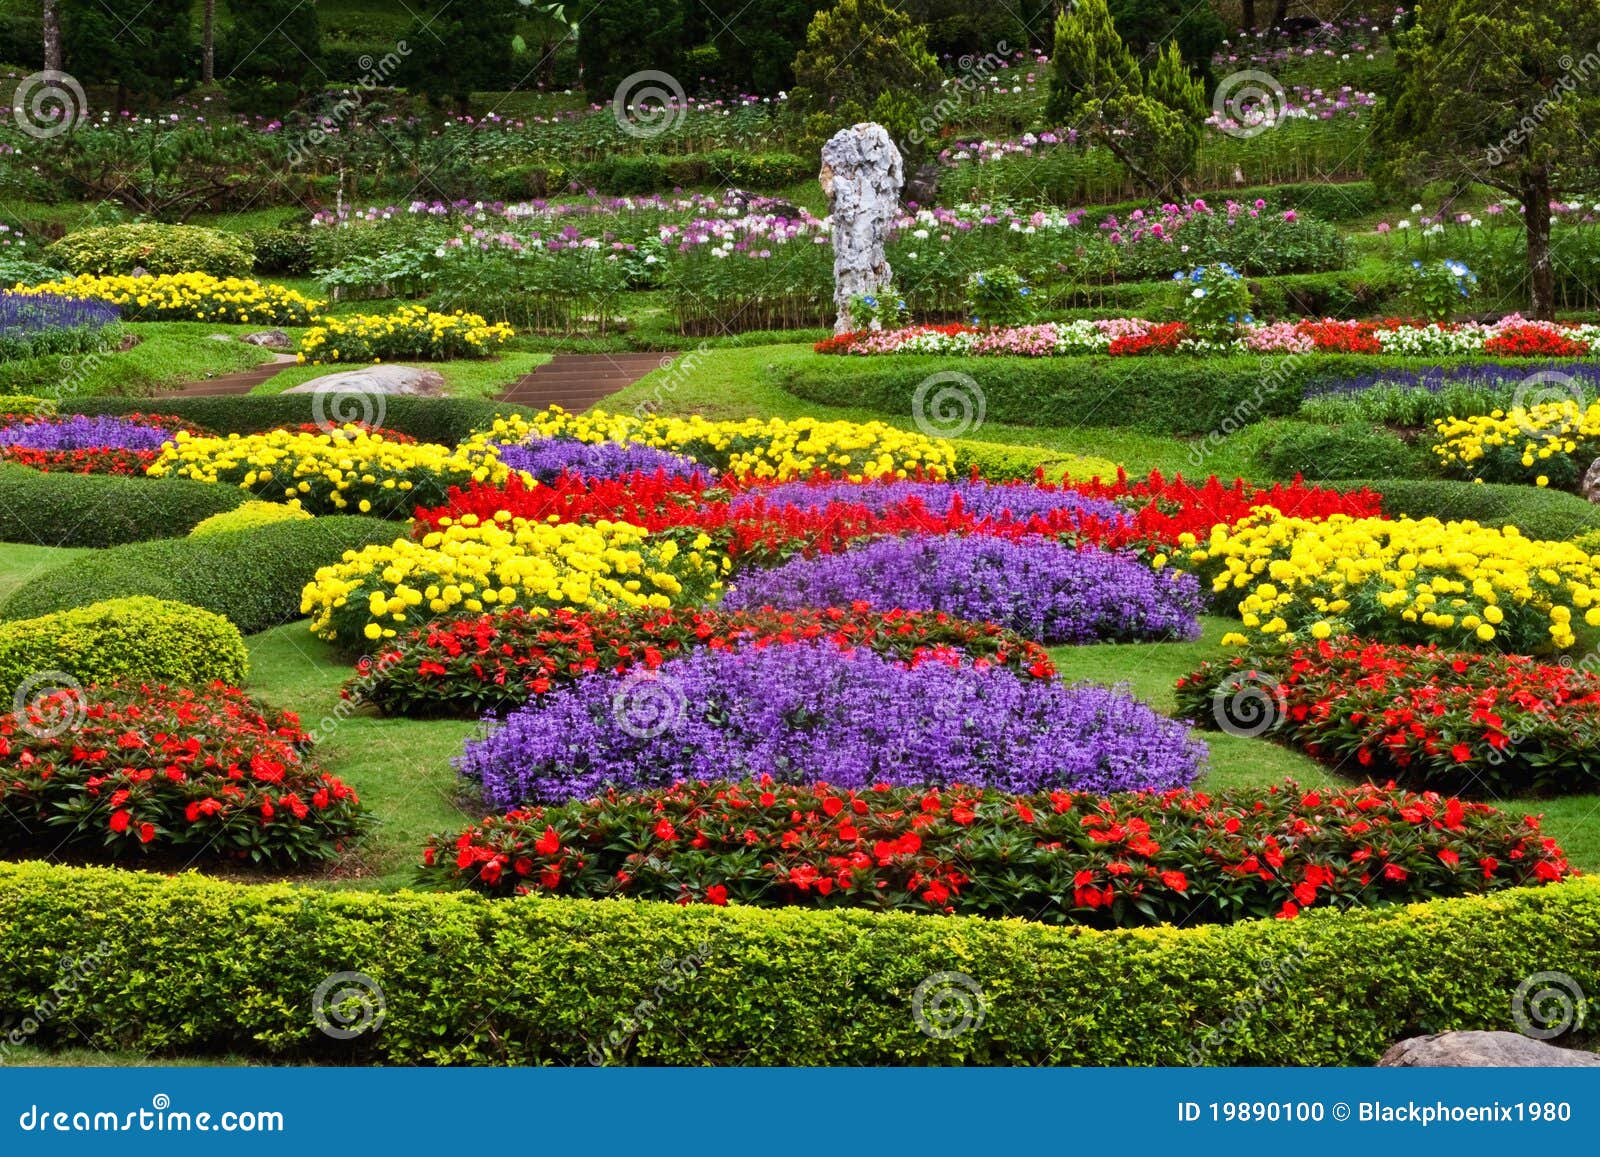 Beautiful Flower Garden Photography